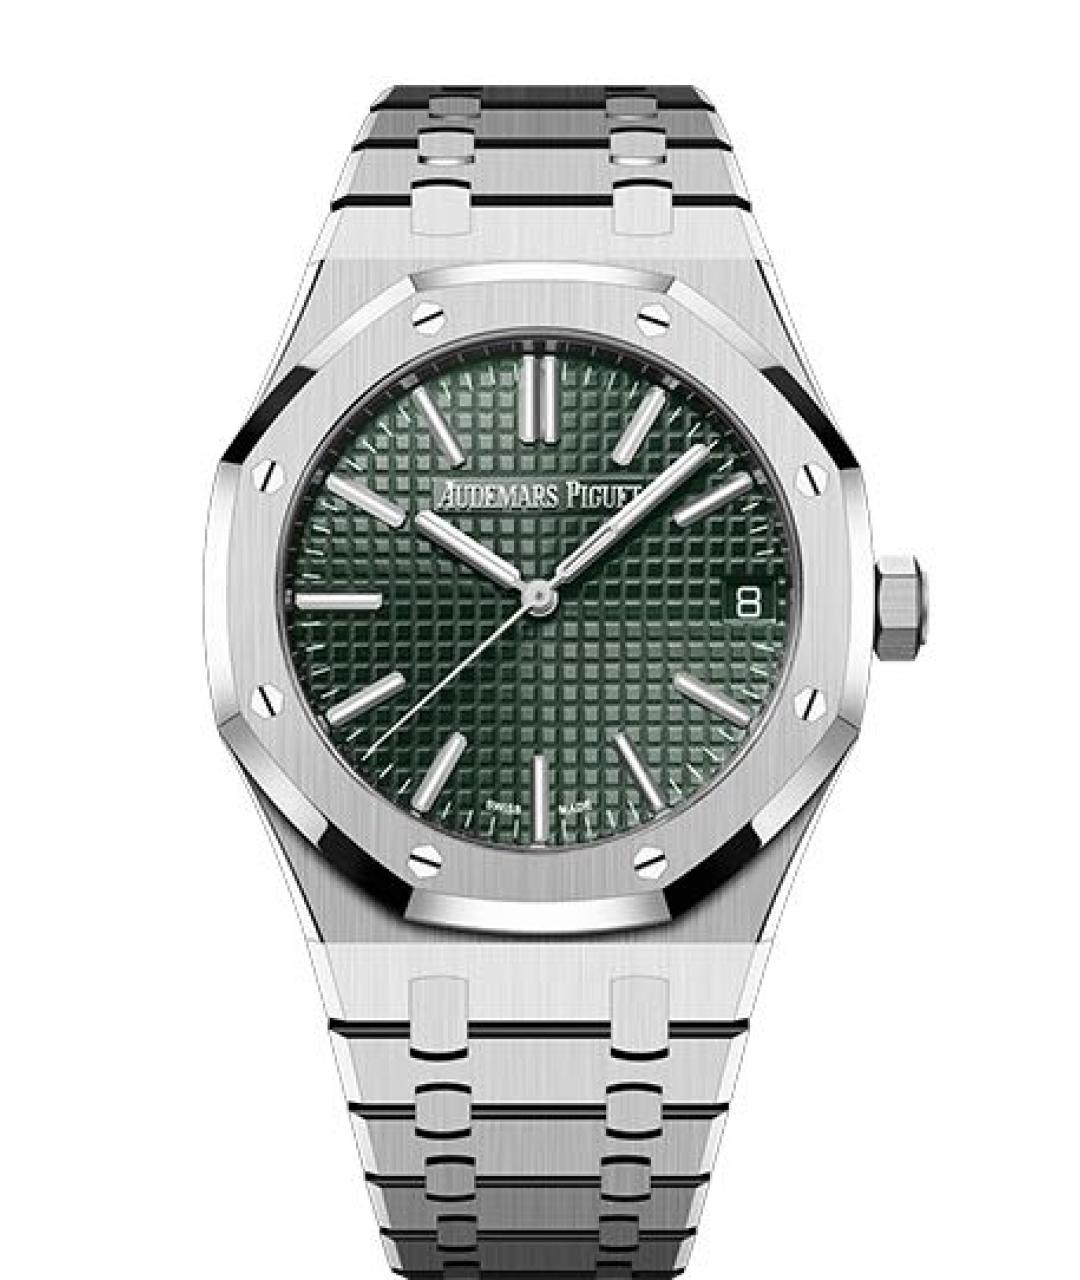 Audemars Piguet Зеленые часы, фото 2